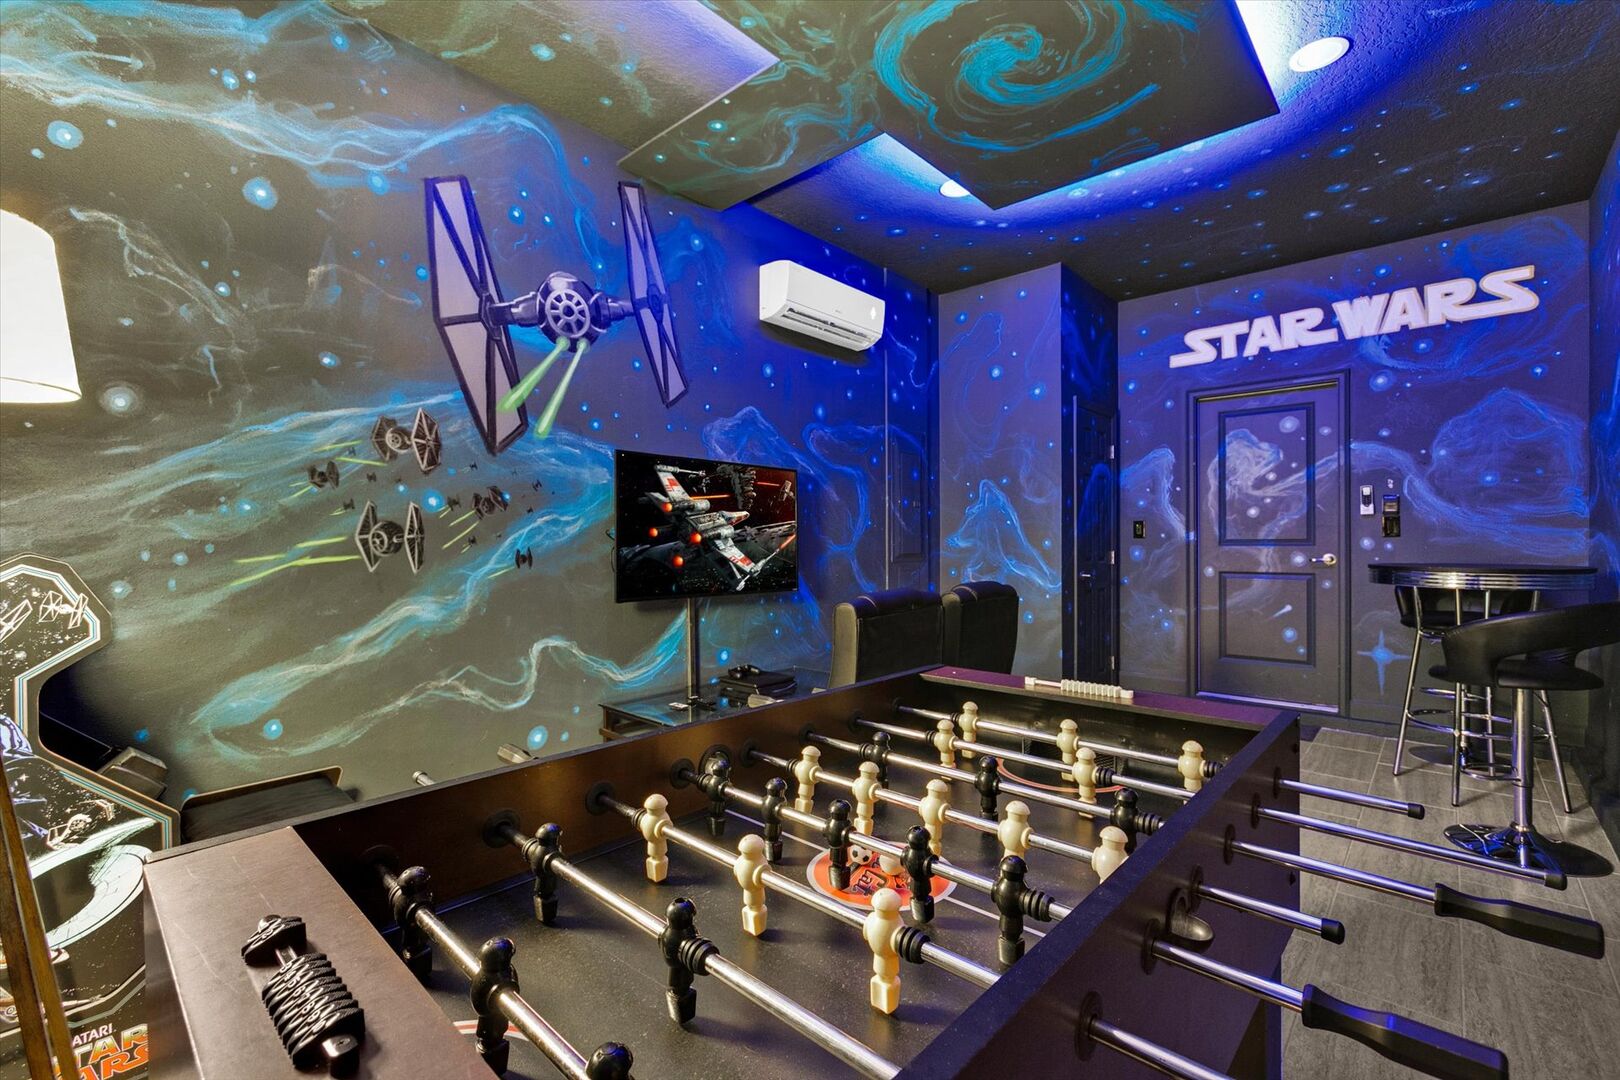 Game Room (Angle)
Star Wars